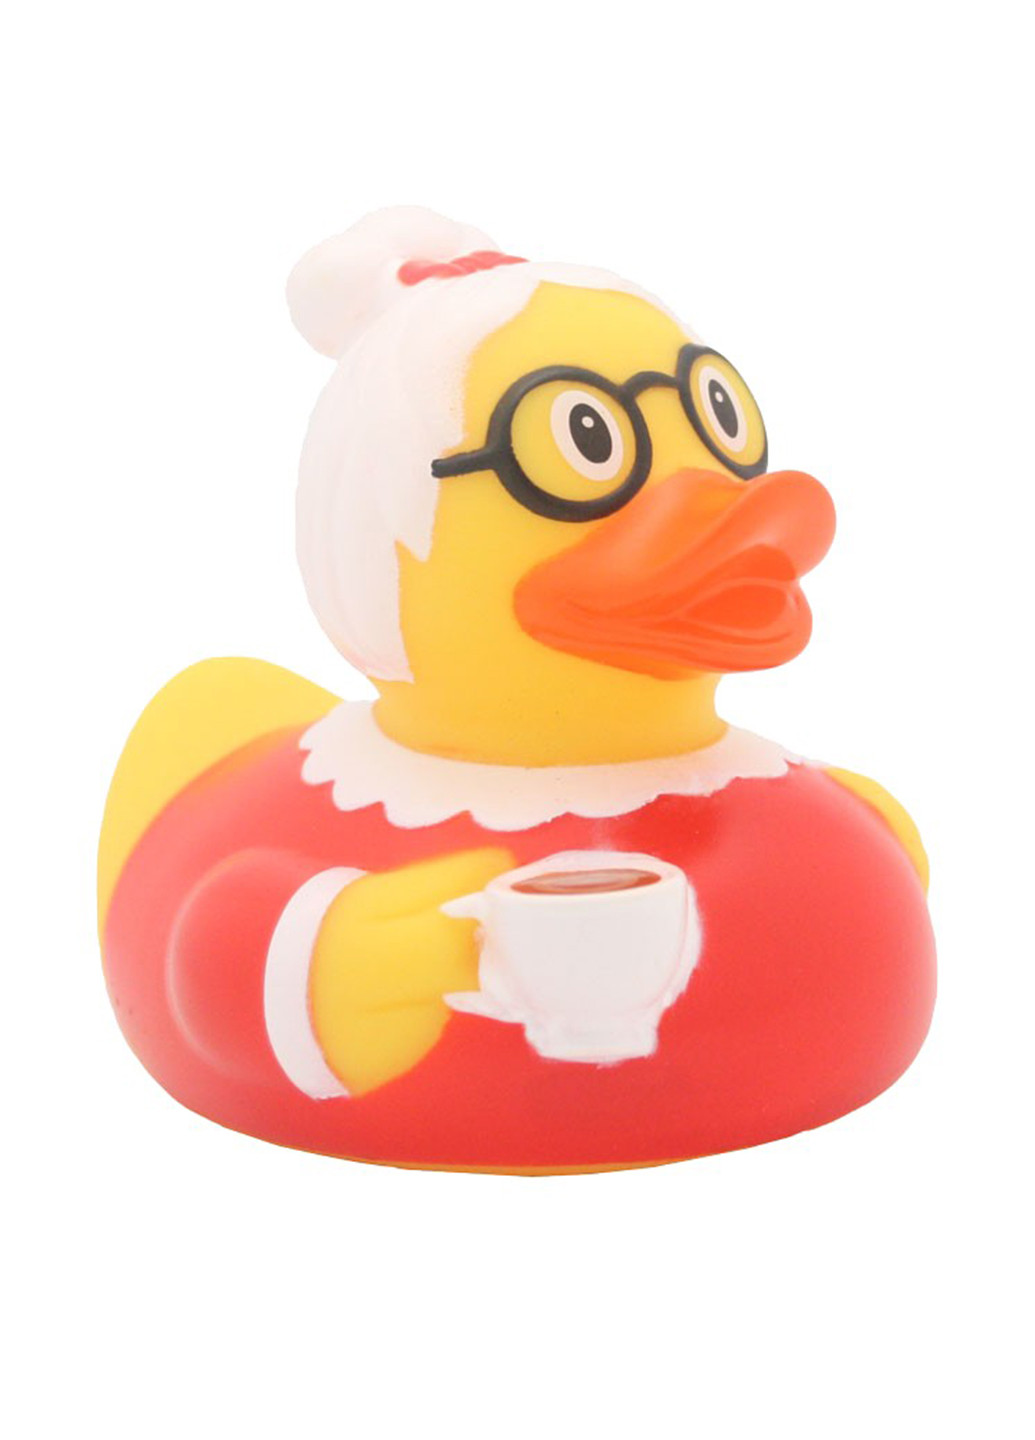 Іграшка для купання Качка Бабуся, 8,5x8,5x7,5 см Funny Ducks (250618768)